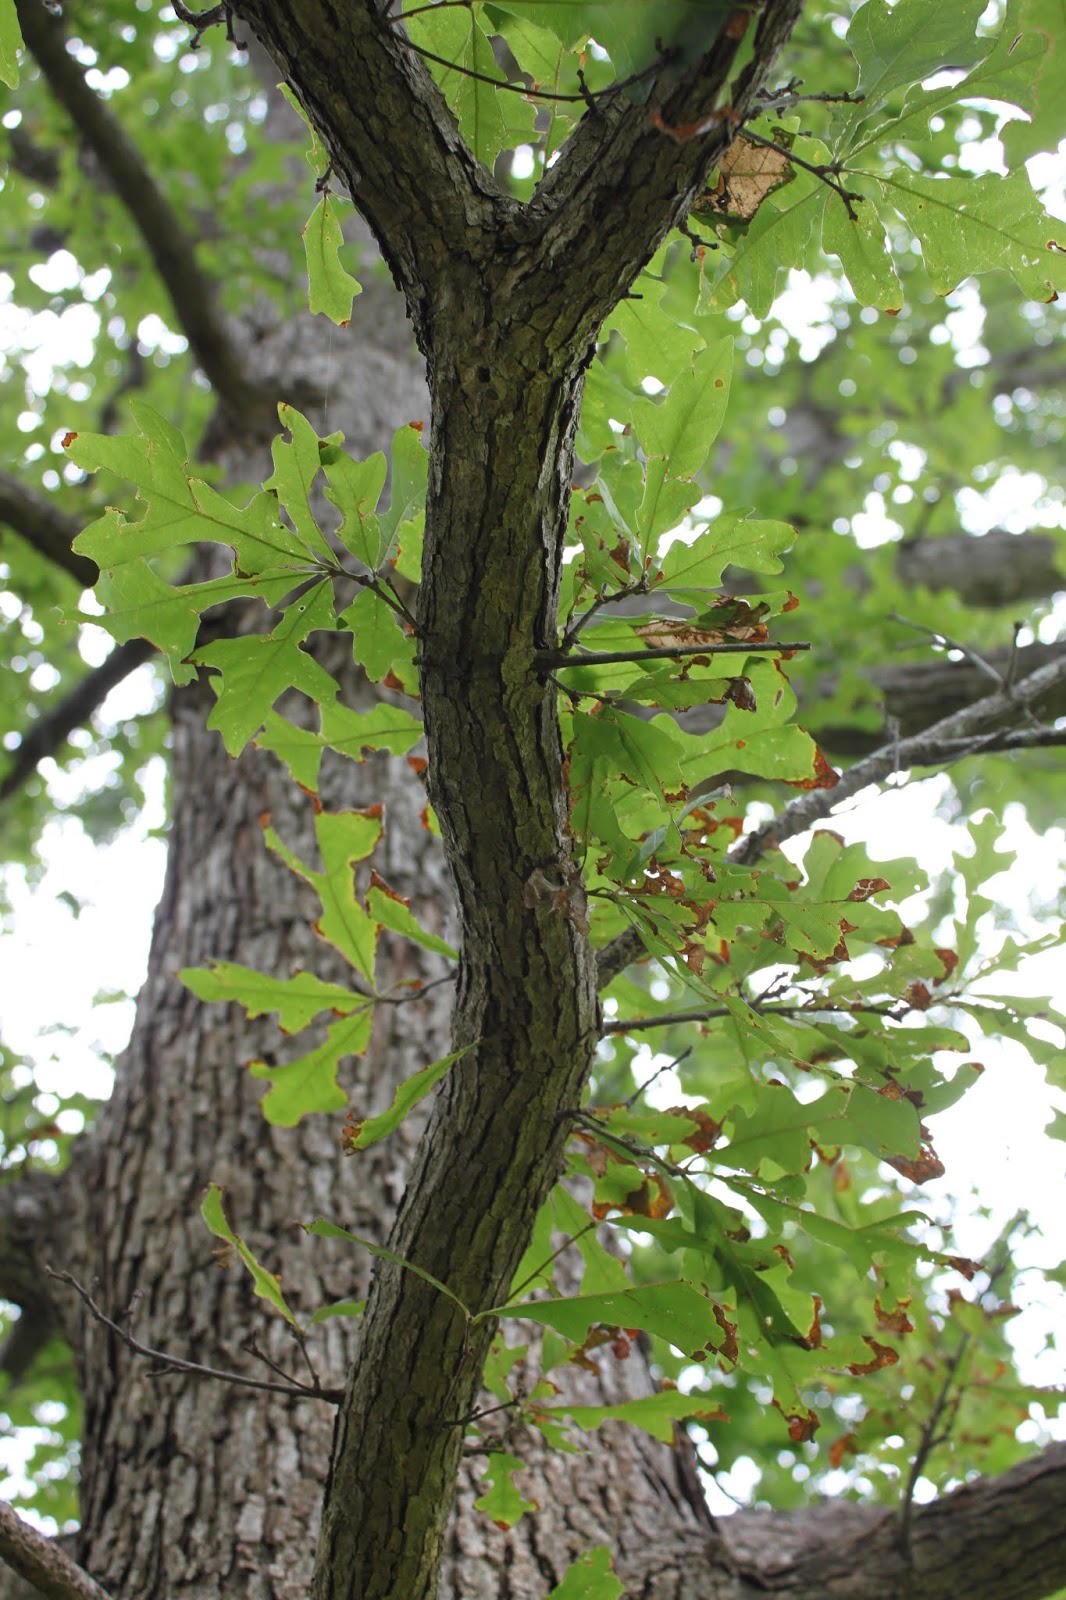 Centenary College Arboretum: Tree of the Week: Overcup Oak (Quercus lyrata)
